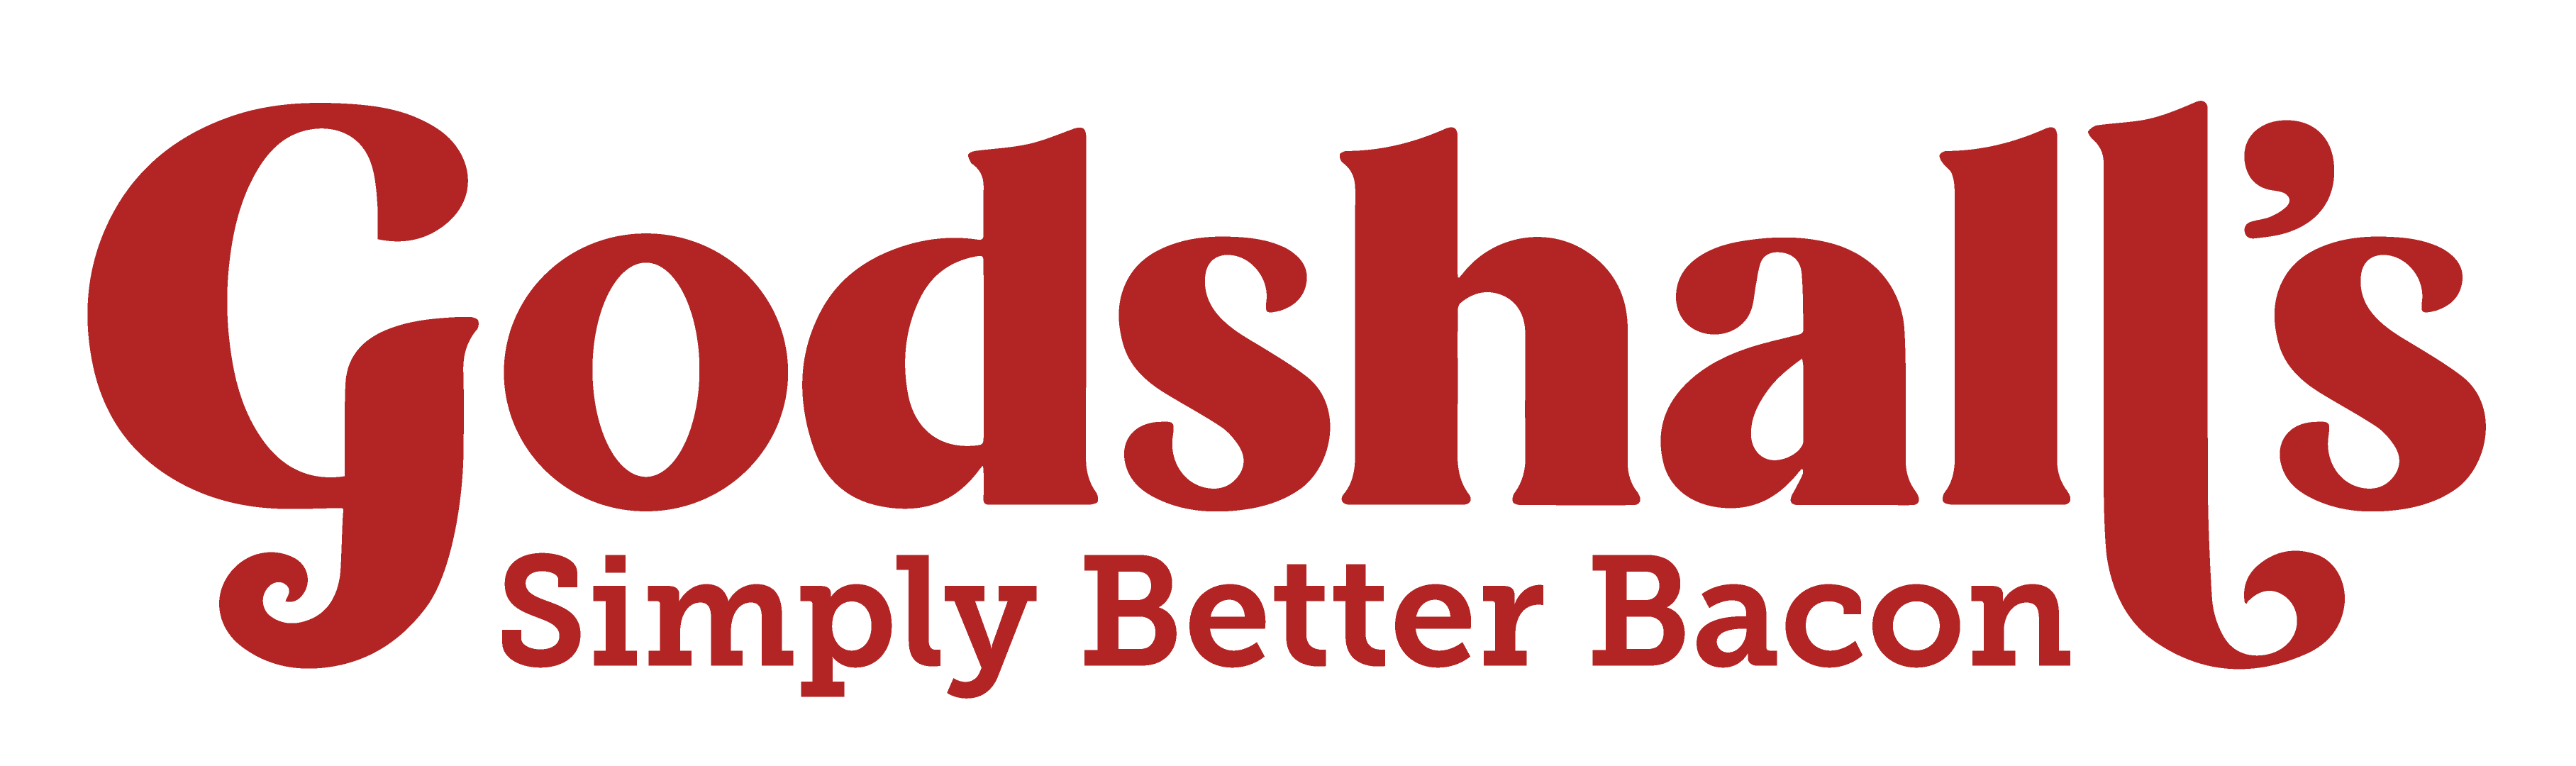 Godshall's logo